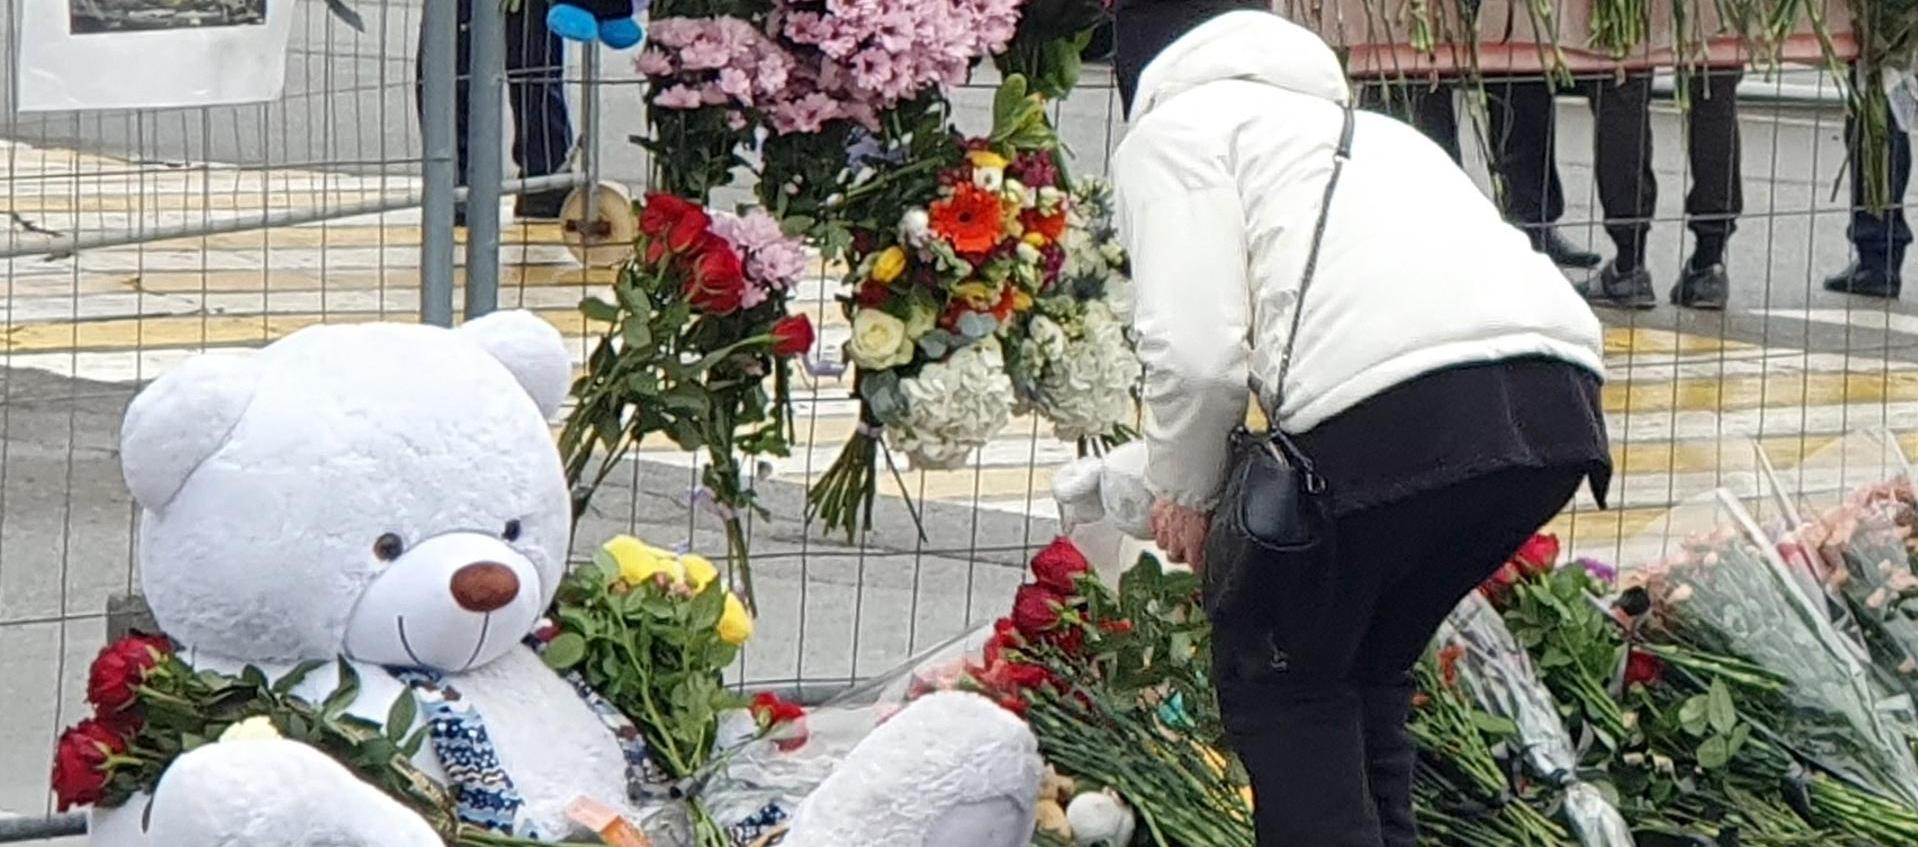 Un osito de peluche y flores son dejados en memoria de las víctimas del mortal ataque terrorista en Krasnogorsk, Rusia